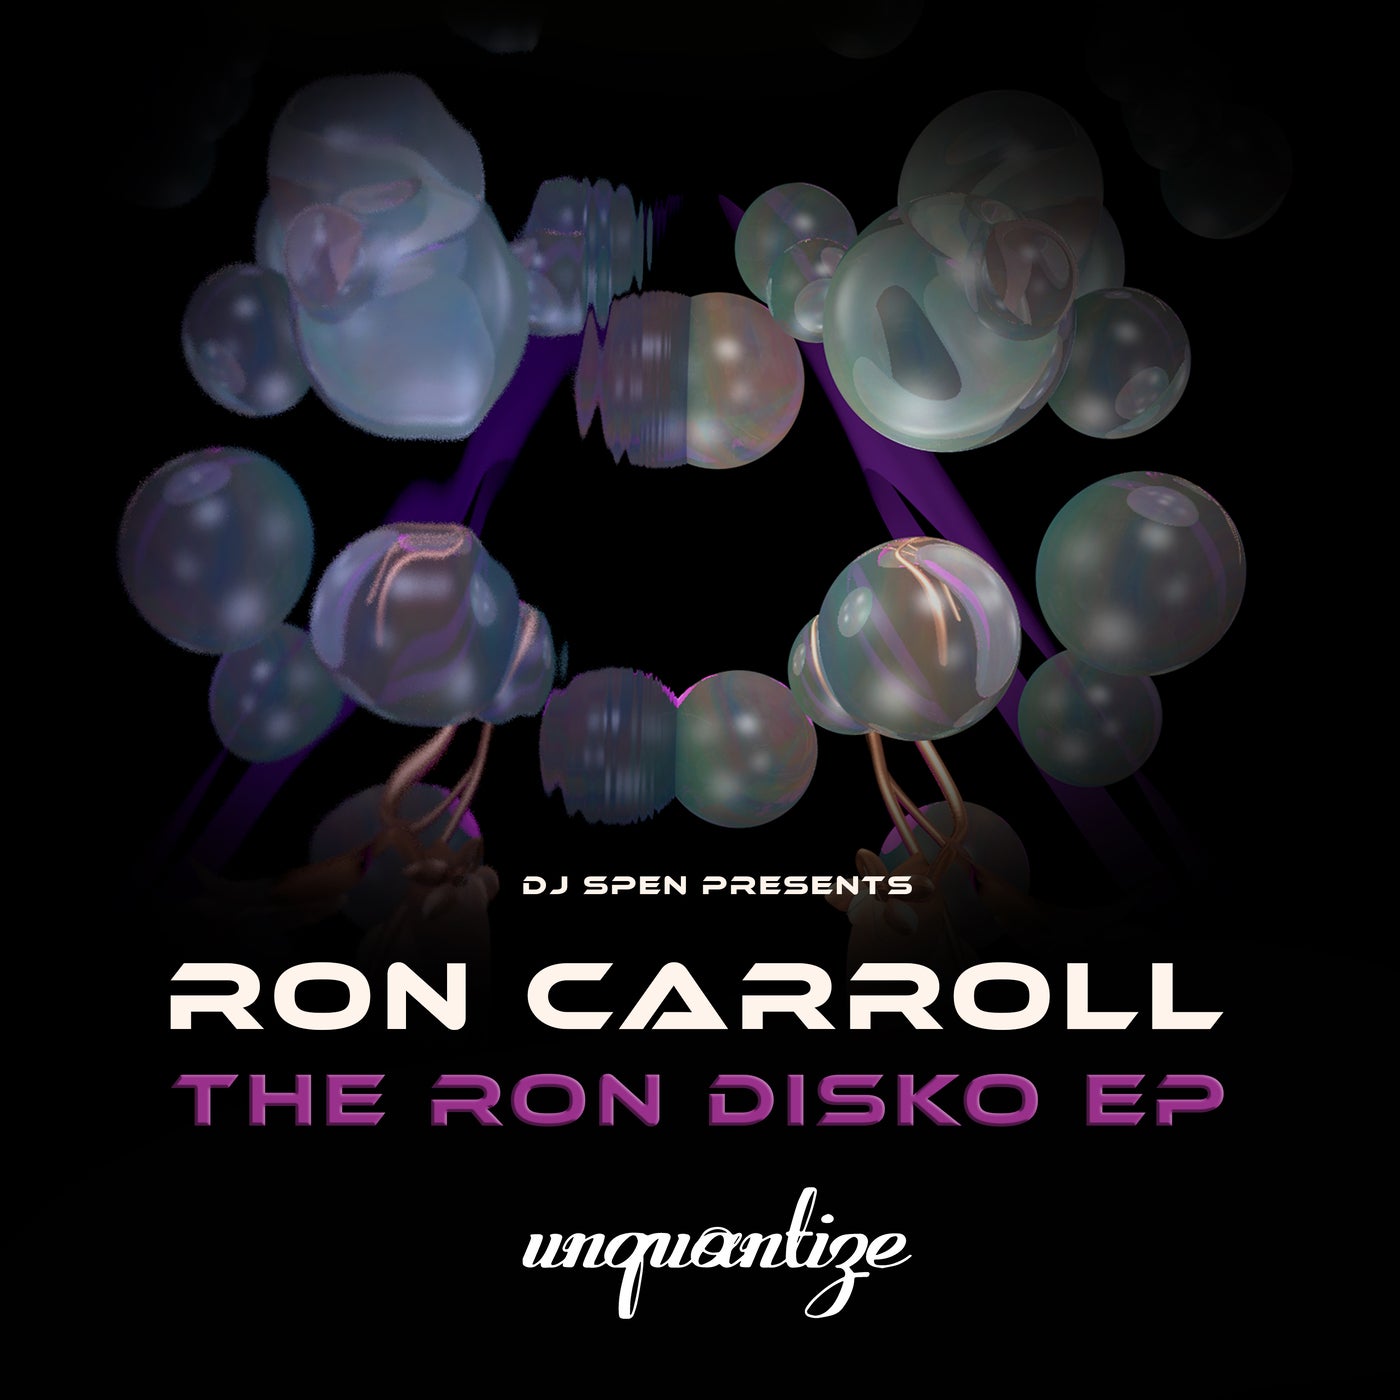 The Ron Disko EP